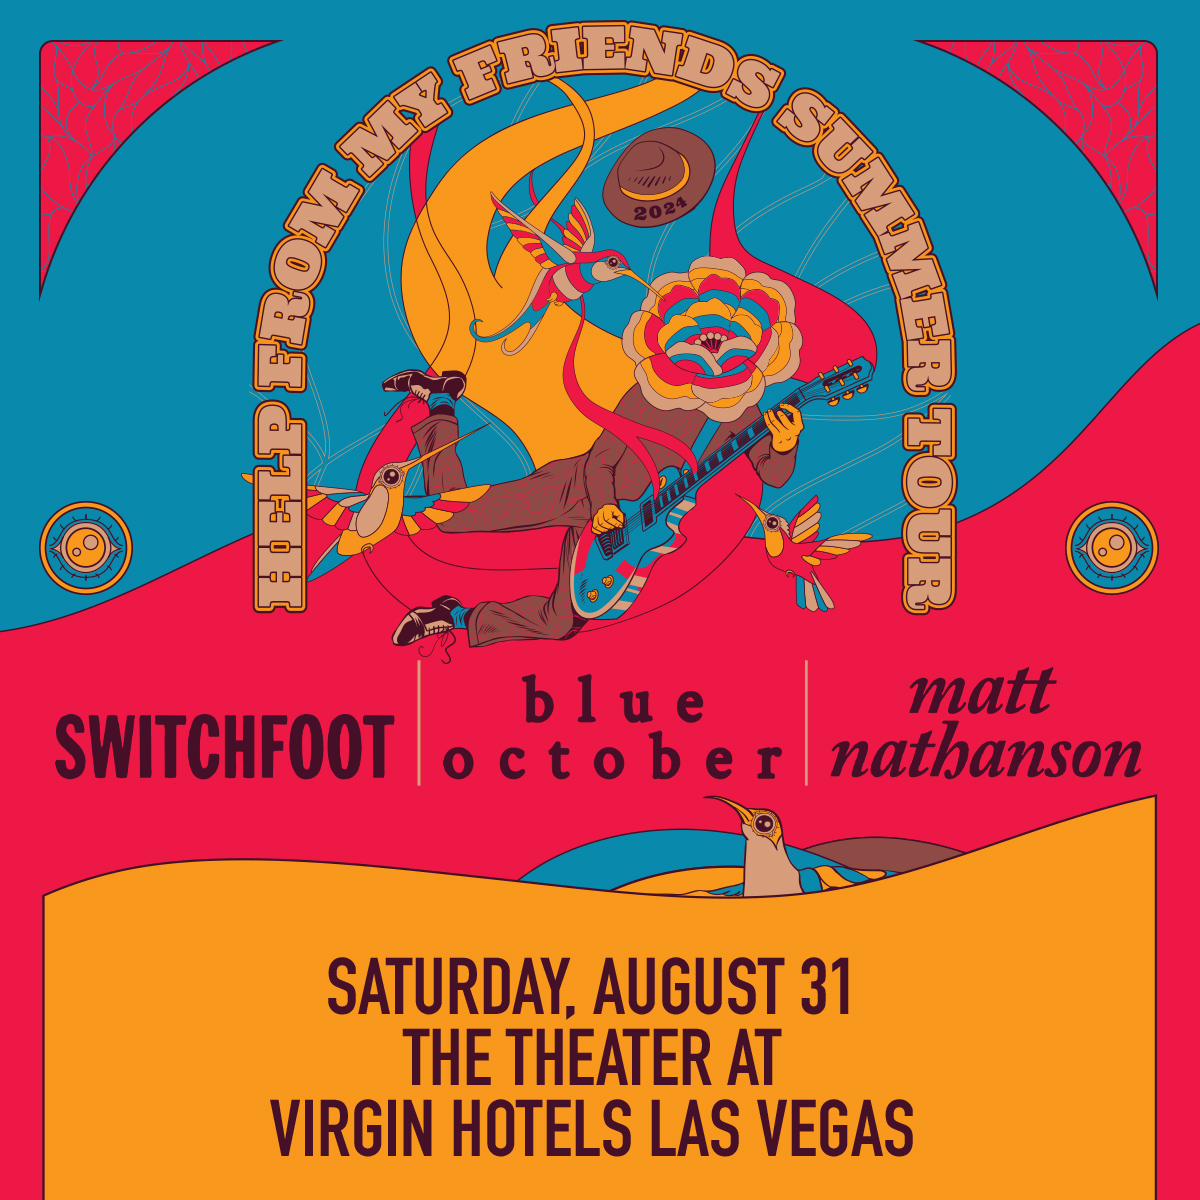 SWITCHFOOT/BLUE OCTOBER/MATT NATHANSONThe Theater at Virgin Hotels Las Vegas